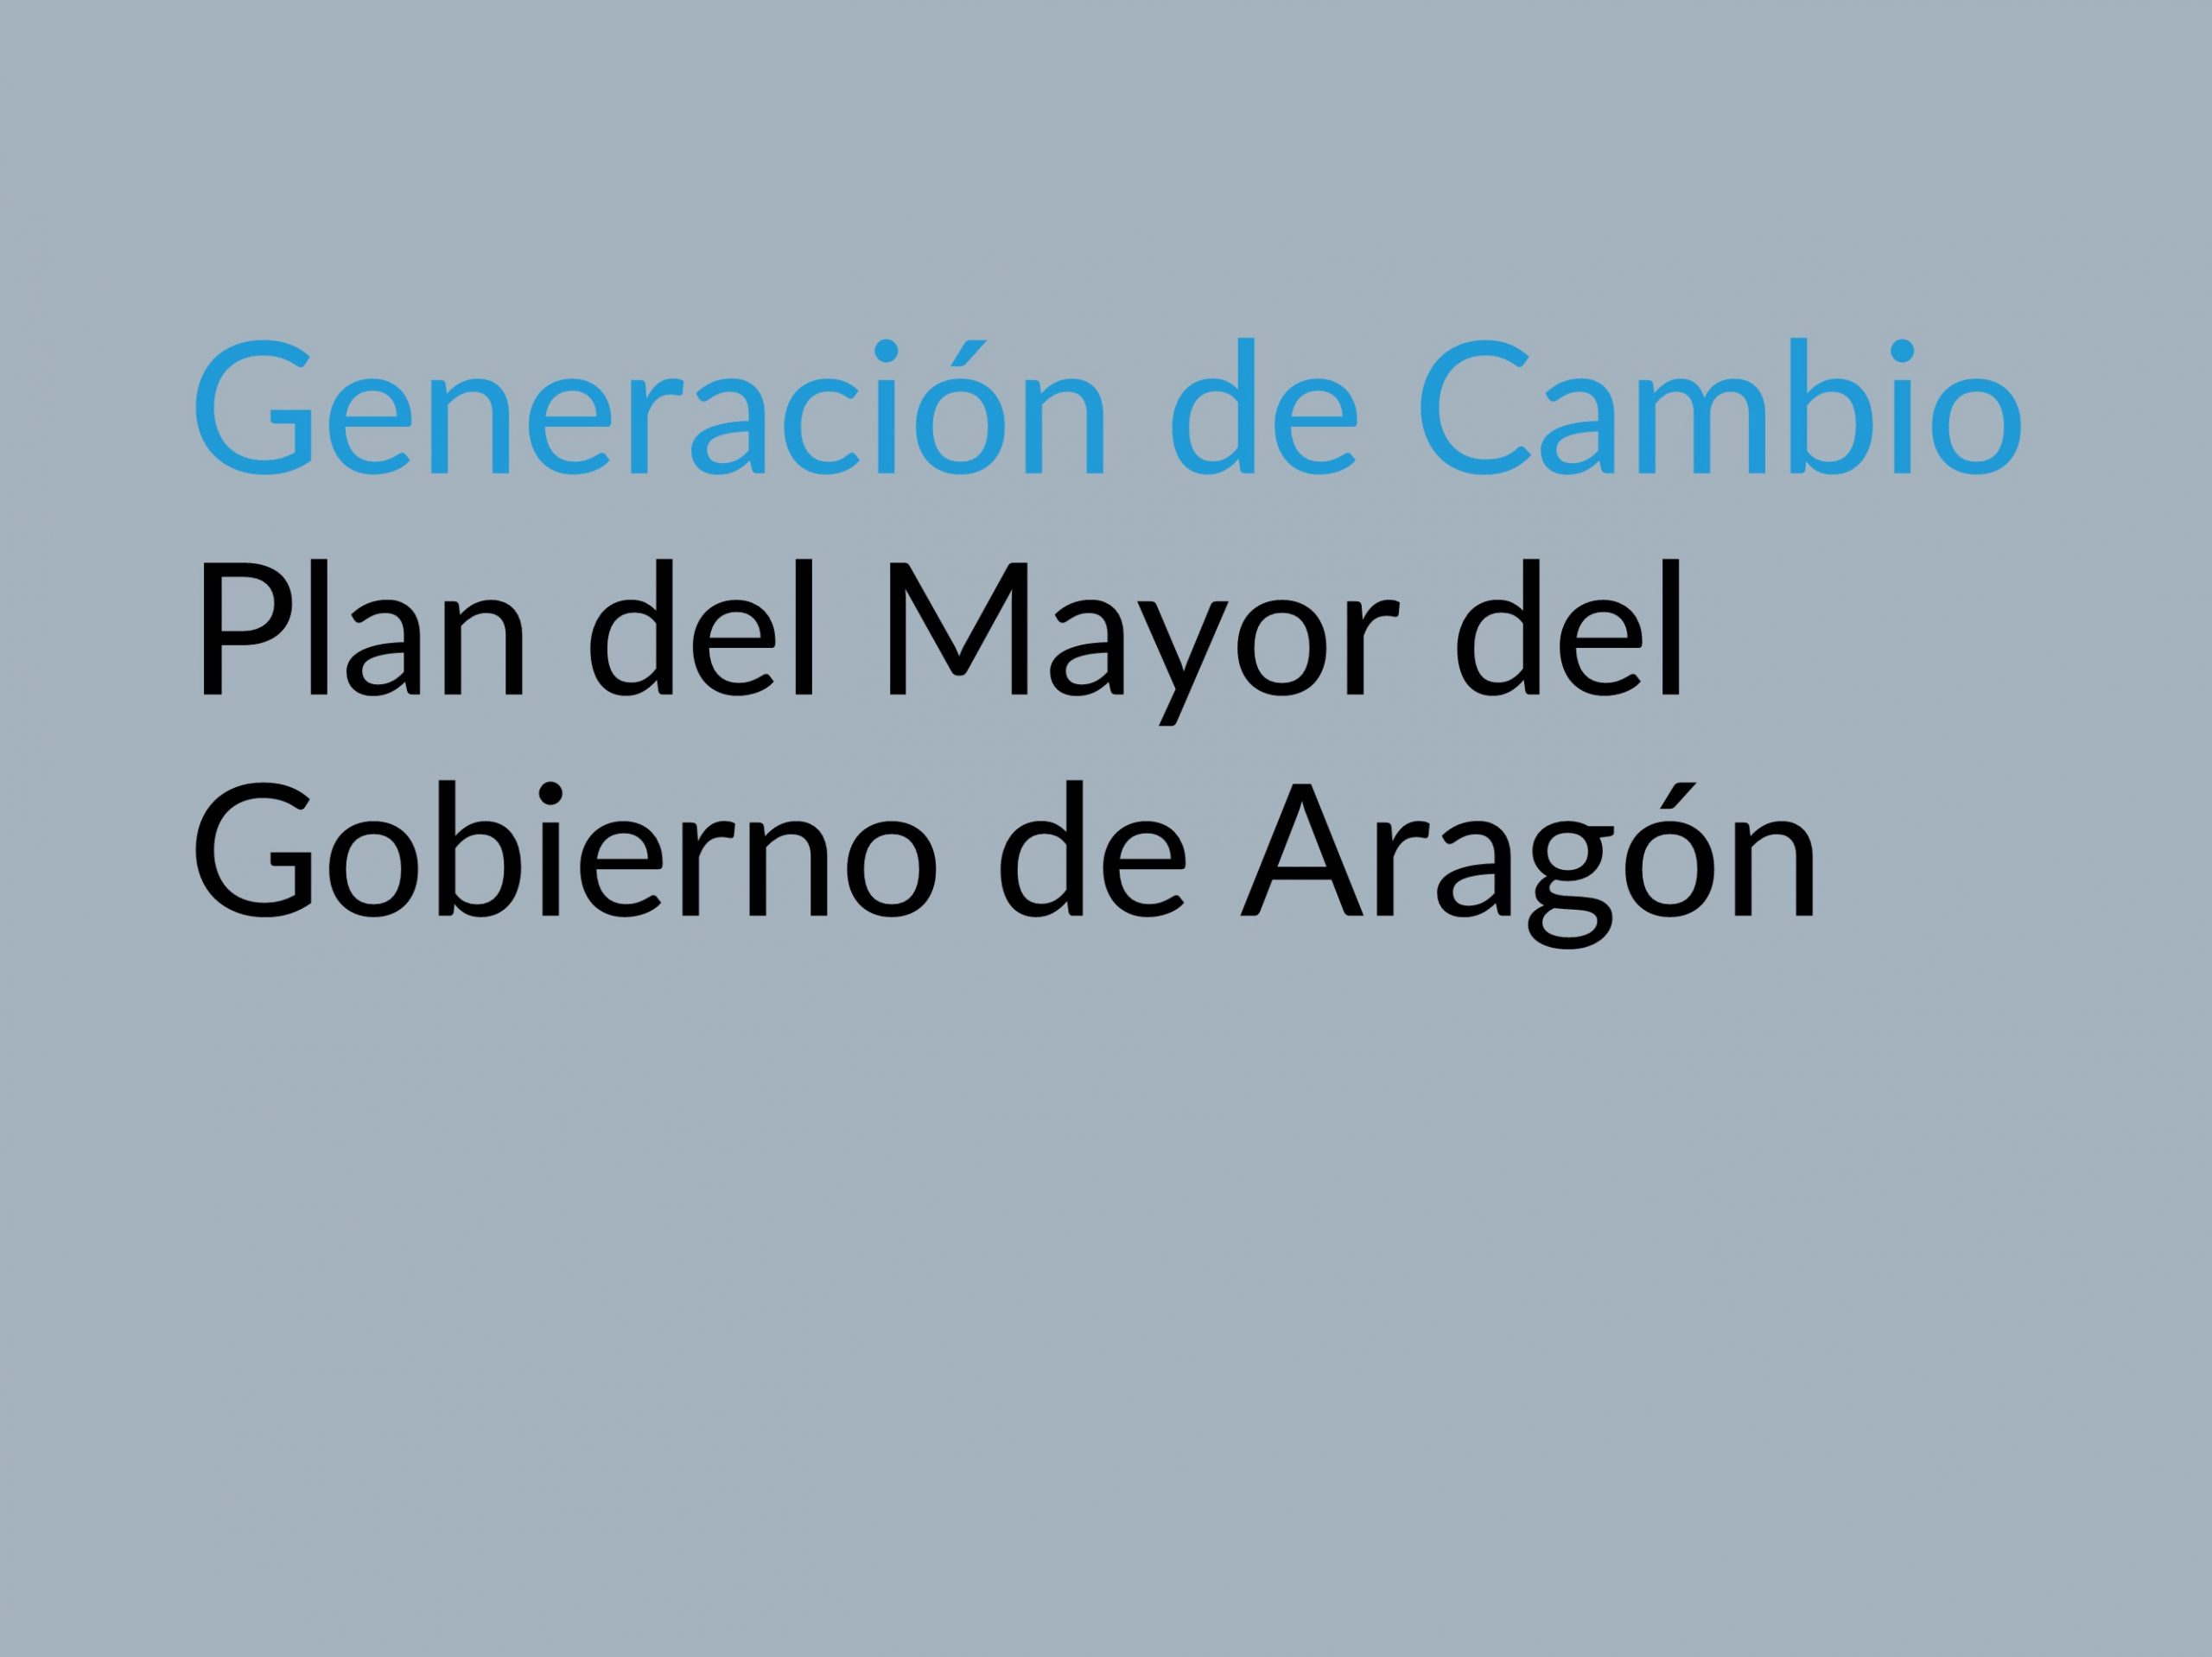 Generación de Cambio Plan del Mayor del Gobierno de Aragón - Enlace al Documento Pdf